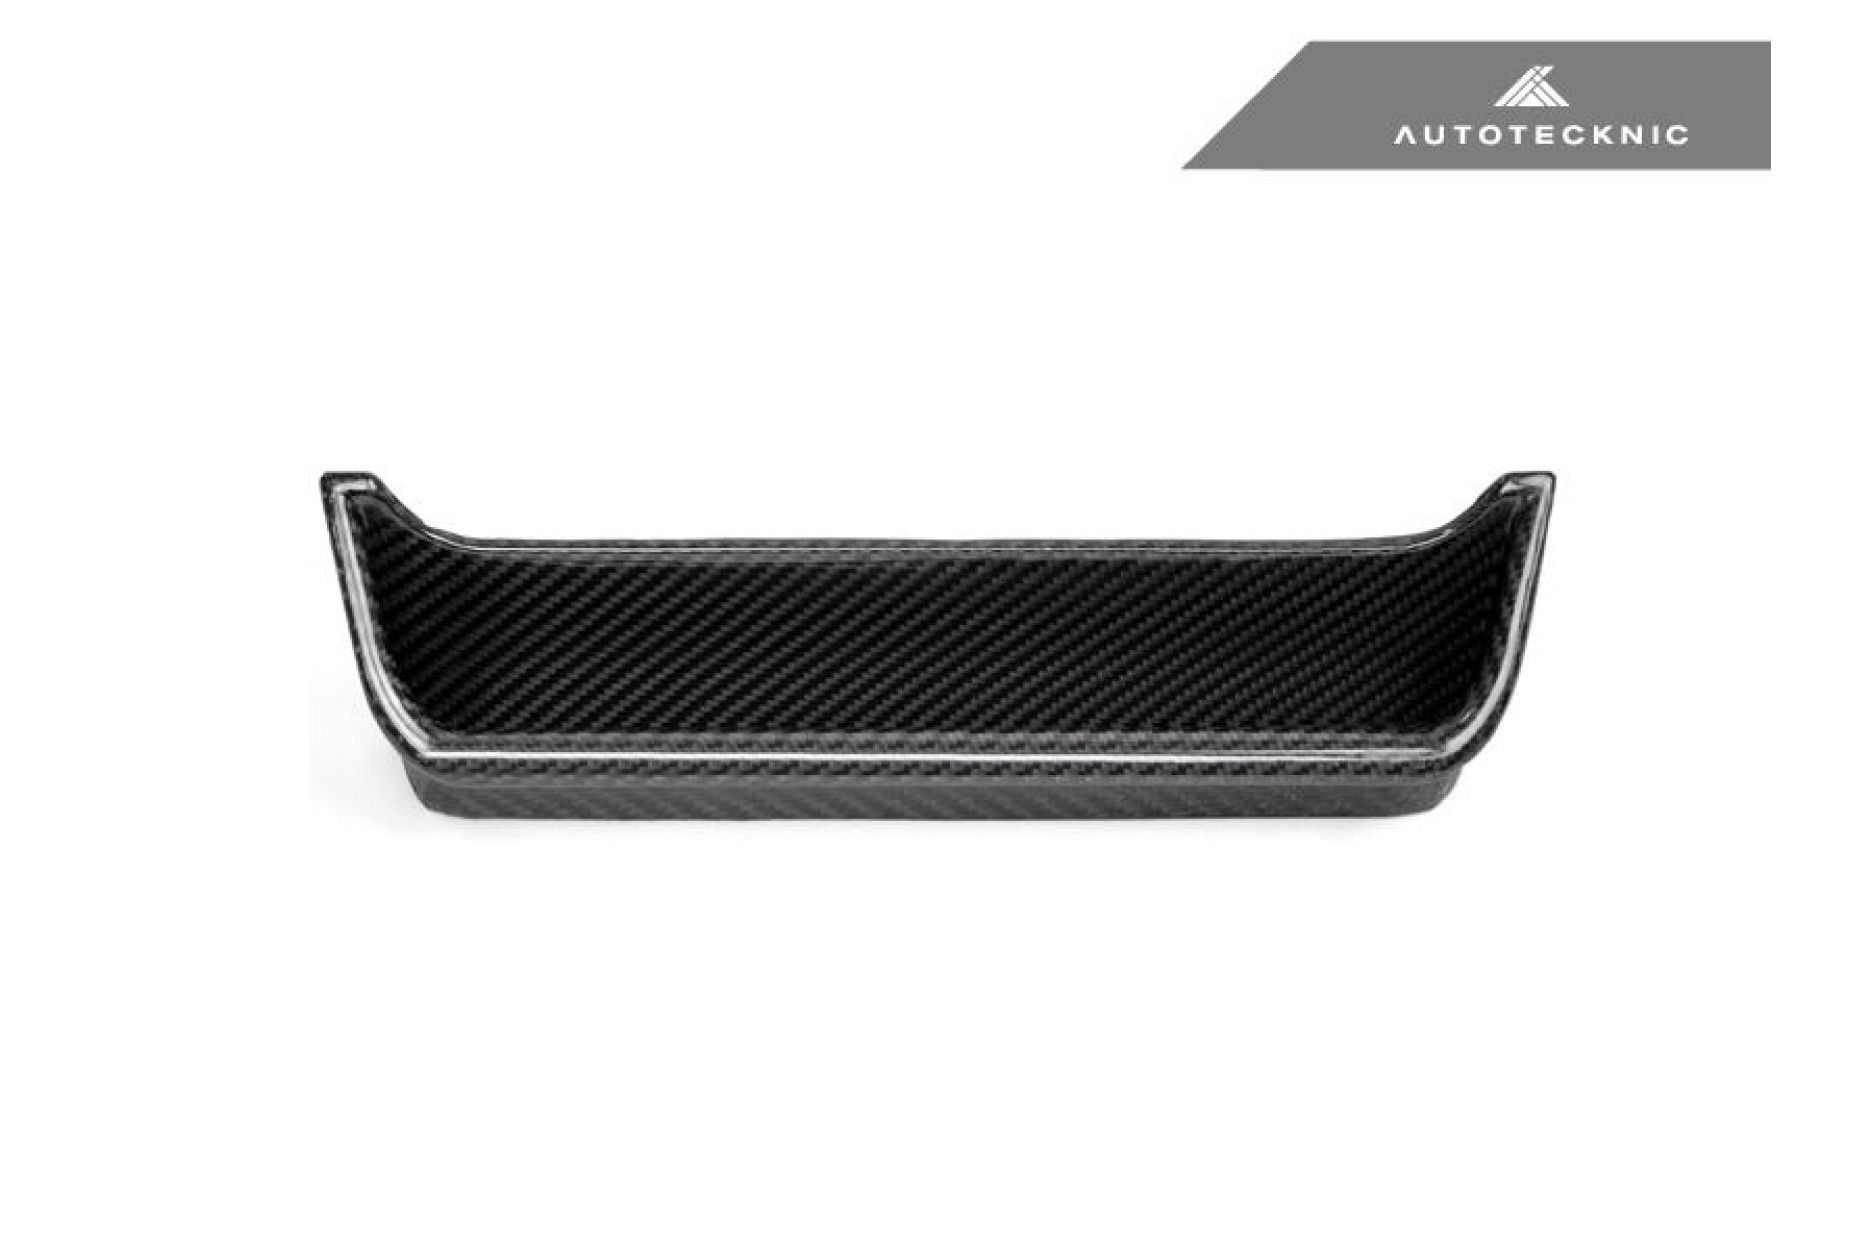 Autotecknic Trockencarbon Tür-Ablage für Mercedes Benz G-Klasse W463